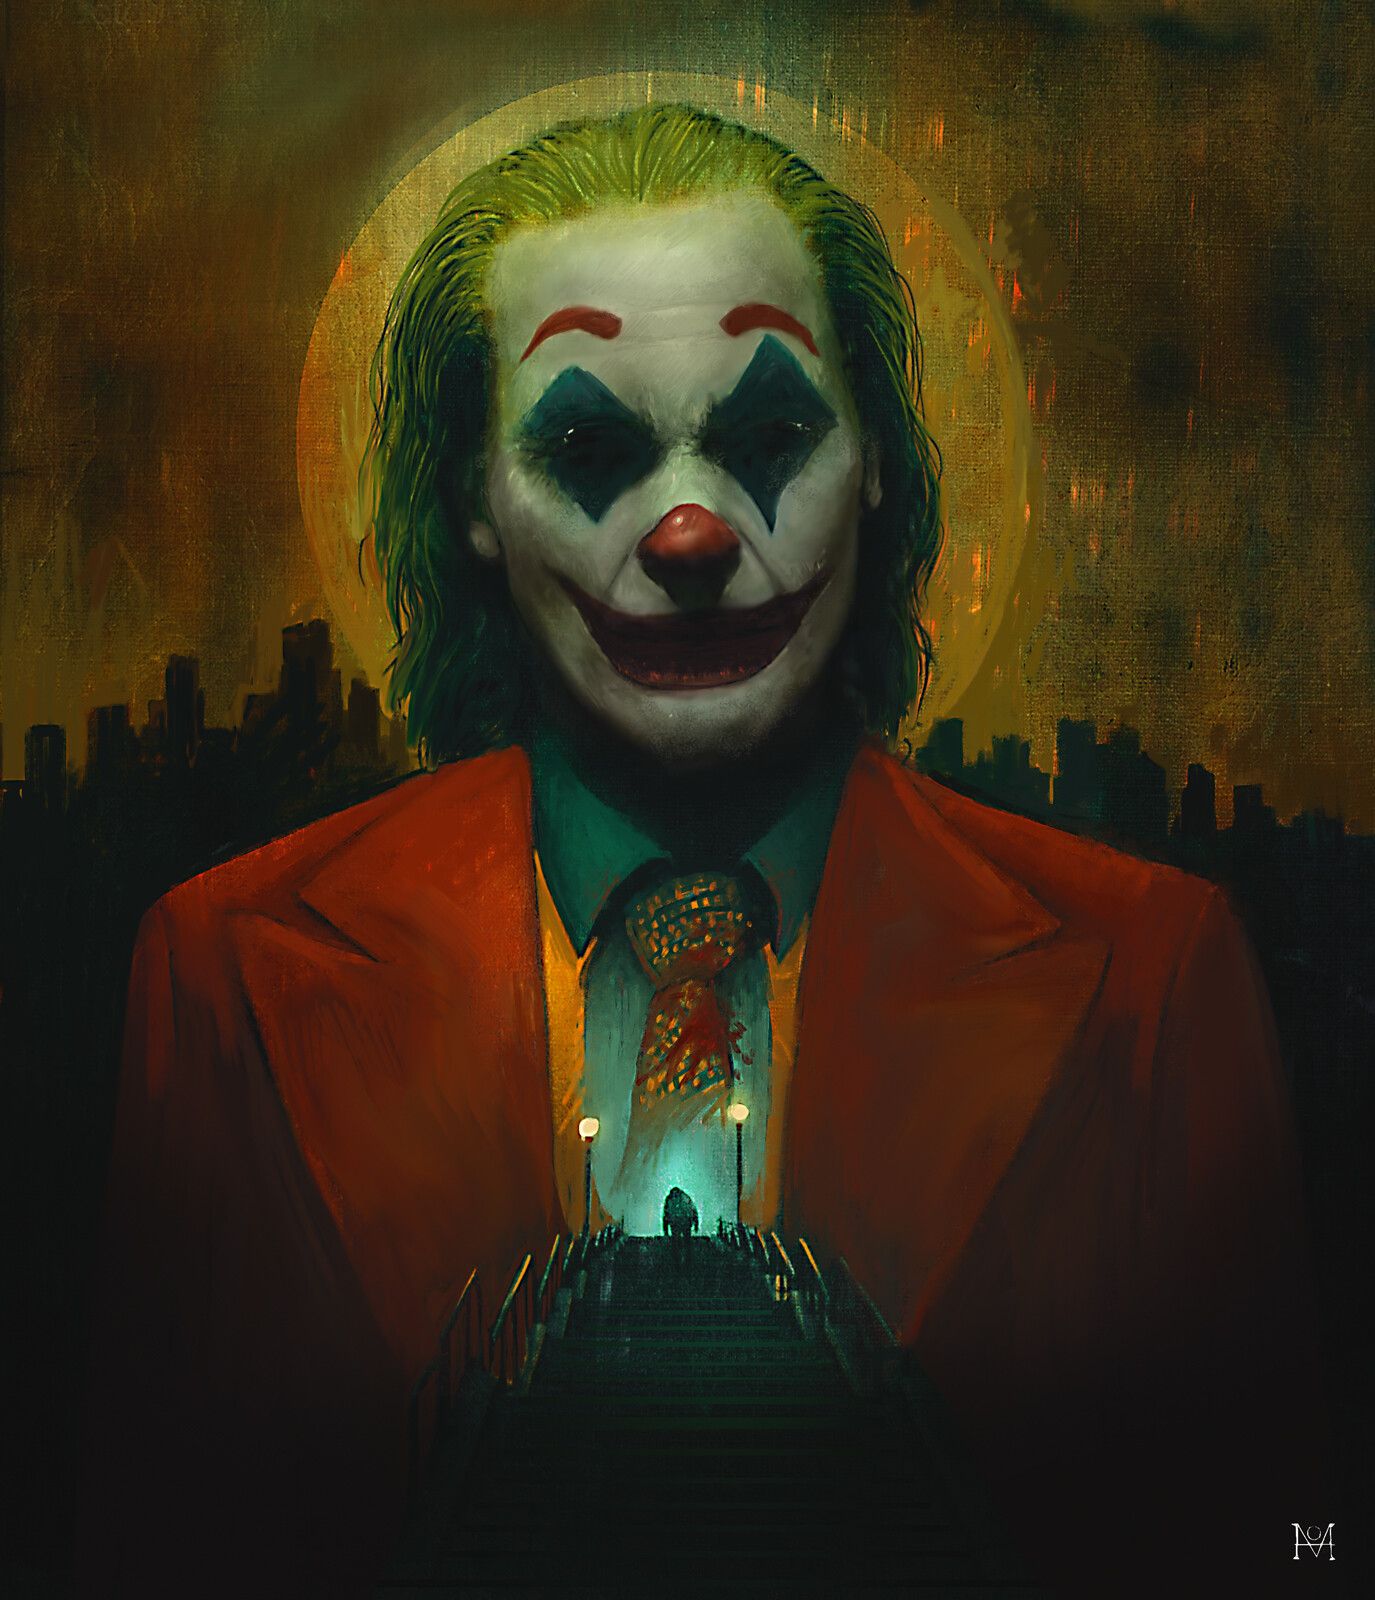 New Joaquin Phoenix Joker Art Wallpapers